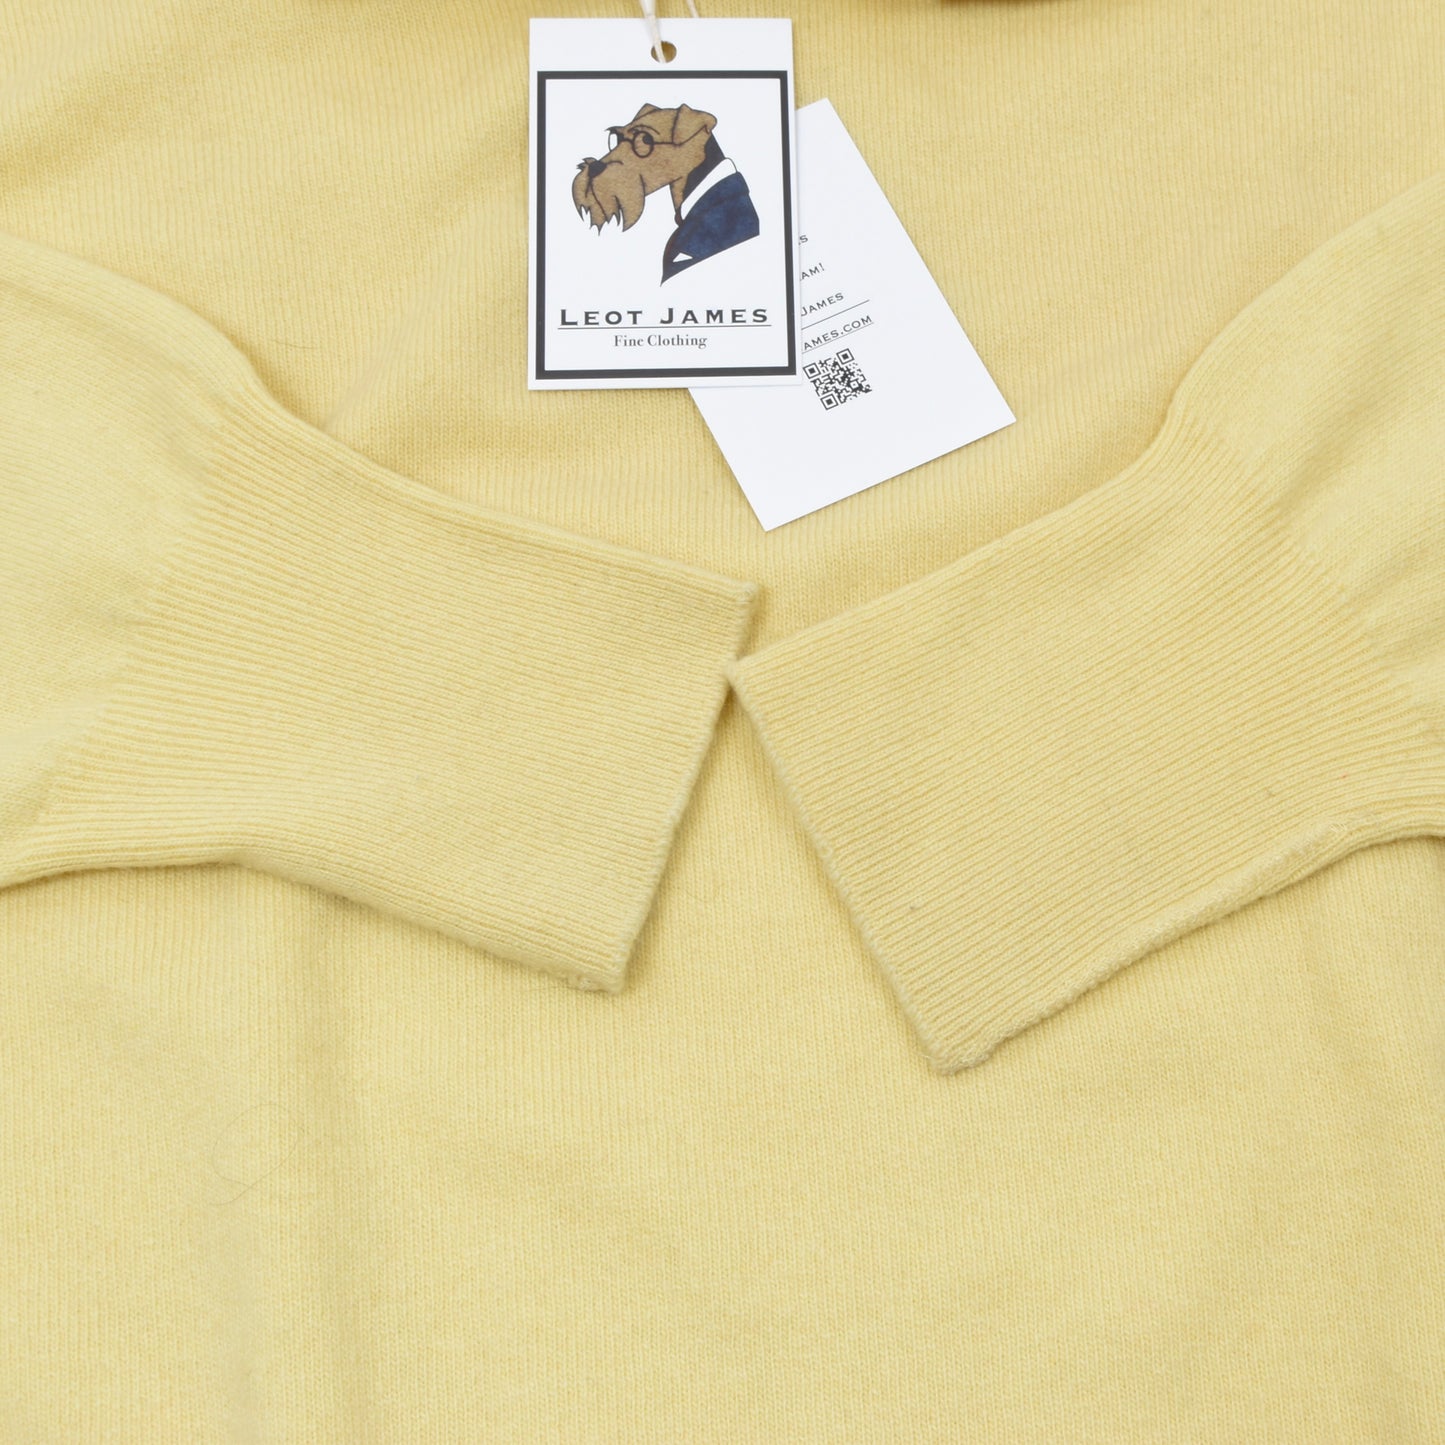 Peter Scott 100% Cashmere Sweater Size UK42 - Canary Yellow